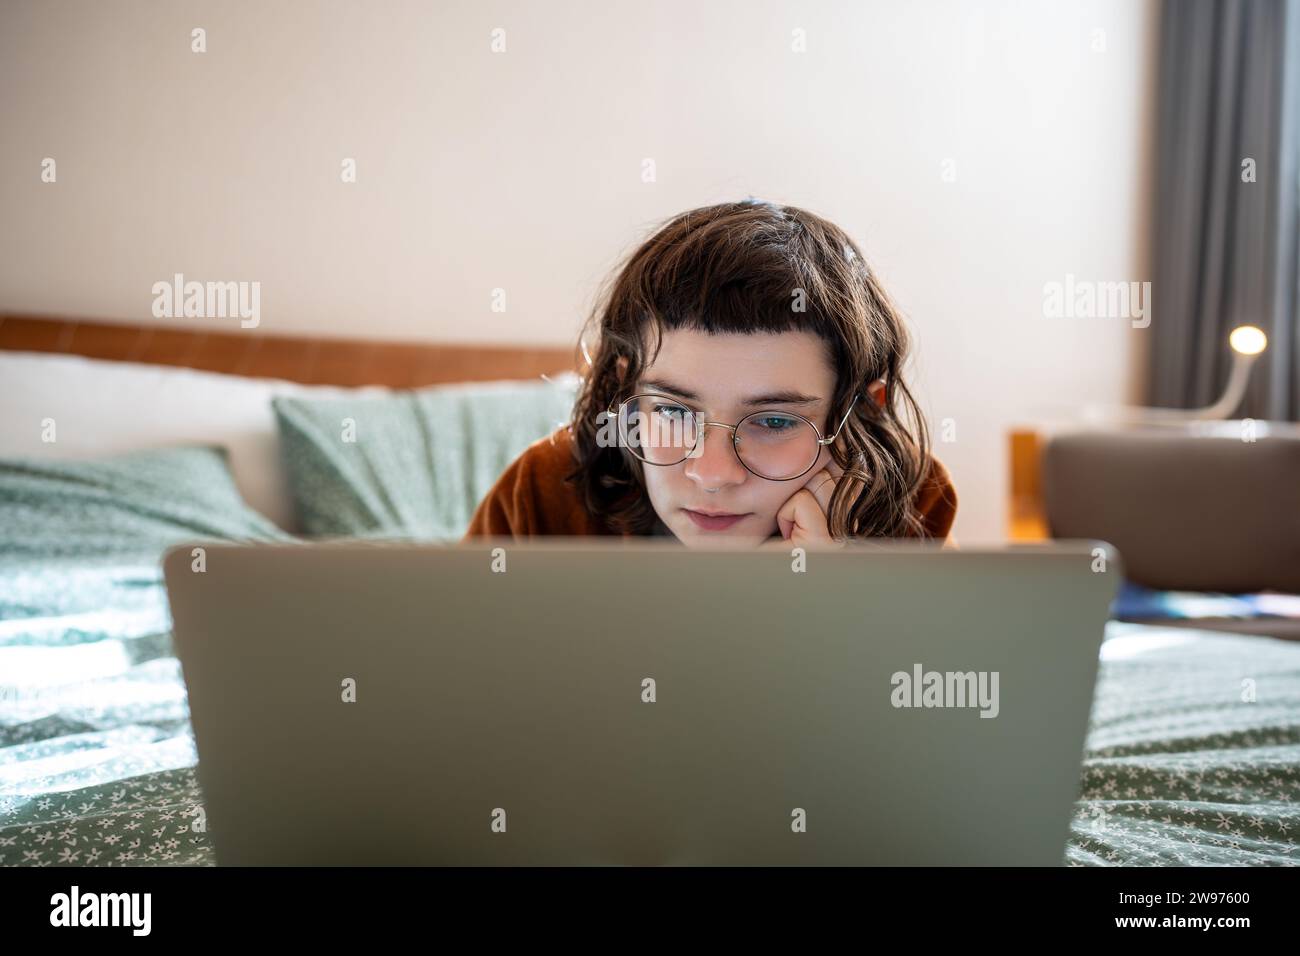 Eccitata ragazza adolescente interessata che guarda film su un computer portatile, passa il fine settimana, passeggia a casa Foto Stock